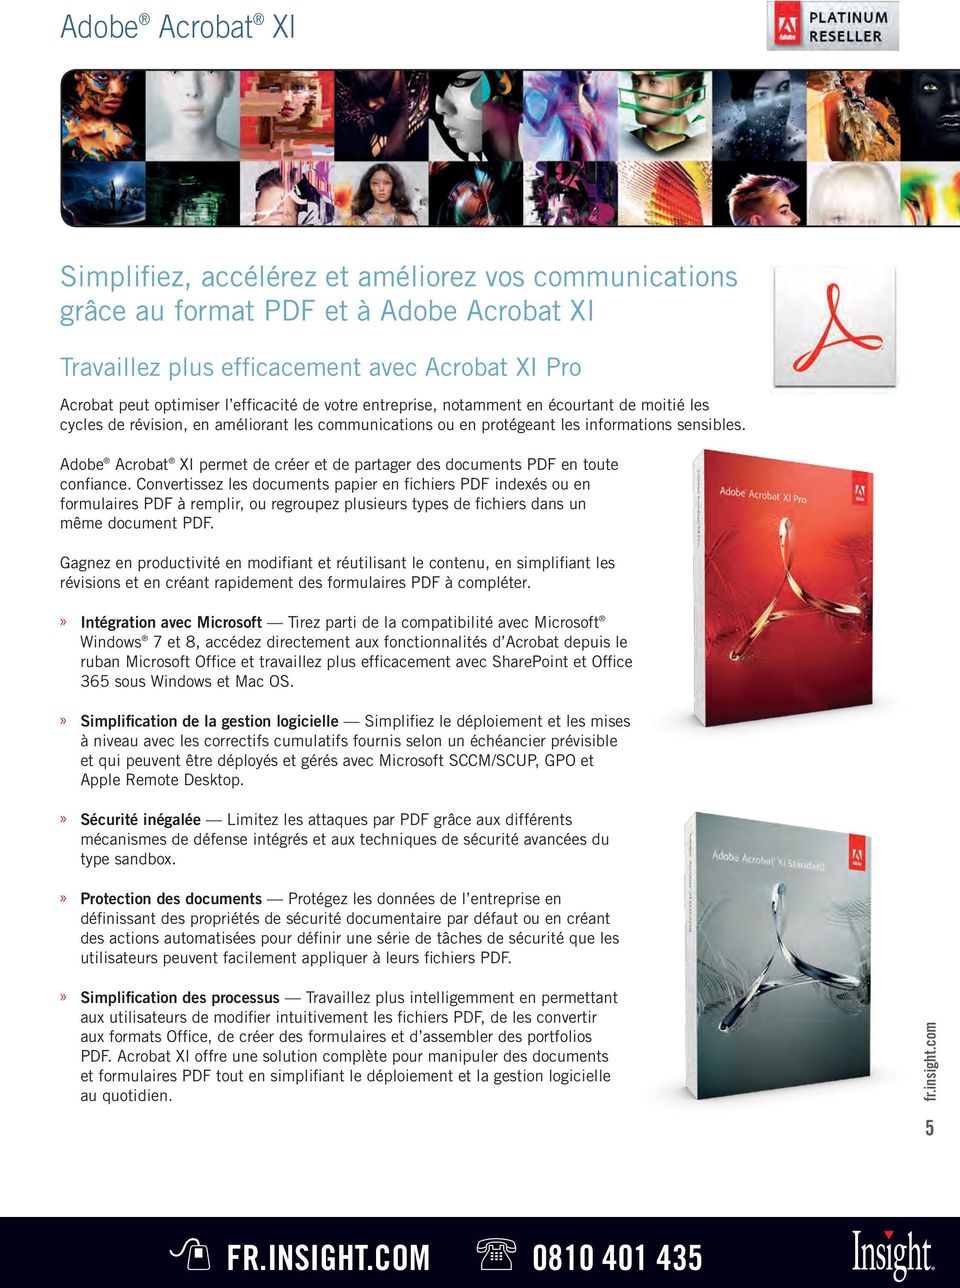 Adobe Acrobat XI permet de créer et de partager des documents PDF en toute confiance.